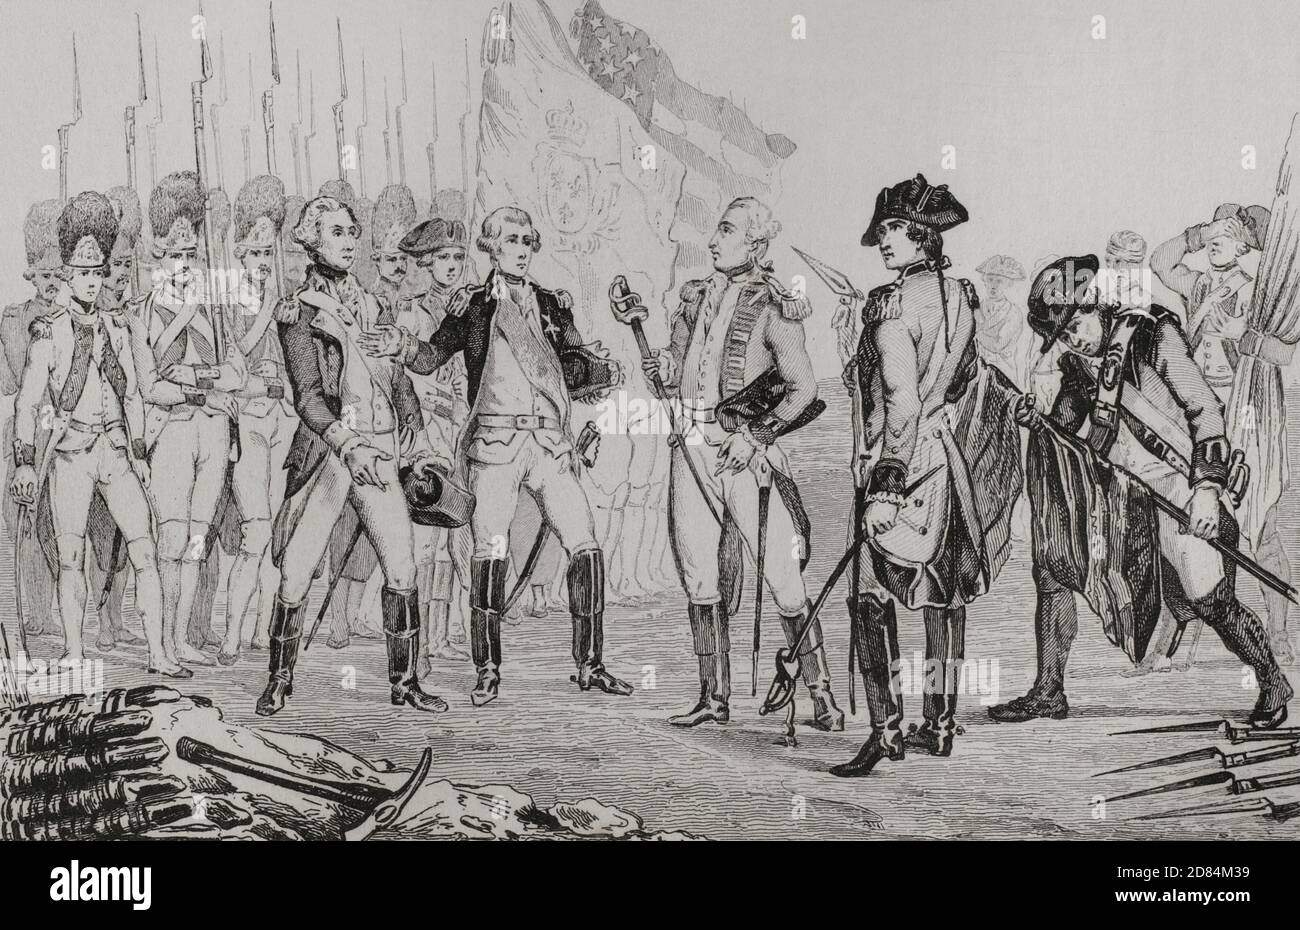 Guerra de Independencia de los Estados Unidos de América. El general británico Cornwallis (1738-1805) se rindió después de la batalla de Yorktown, Virginia, el 19 de octubre de 1781. El ejército americano derrotó a los británicos. El General Cornwallis entregó sus tropas. Al suplicar enfermedad, Cornwallis no asistió a la ceremonia de entrega, pero su segundo al mando, el general Charles o’Hara, llevó la espada de Cornwallis a los comandantes estadounidense y francés. Grabado por Vernier. Panorama Universal. Historia de los Estados Unidos de América, a partir de la 1 ª edición de Jean B.G. Roux de Rochelle's Etats-Unis d'Amérique en 1837. Edición en español Foto de stock